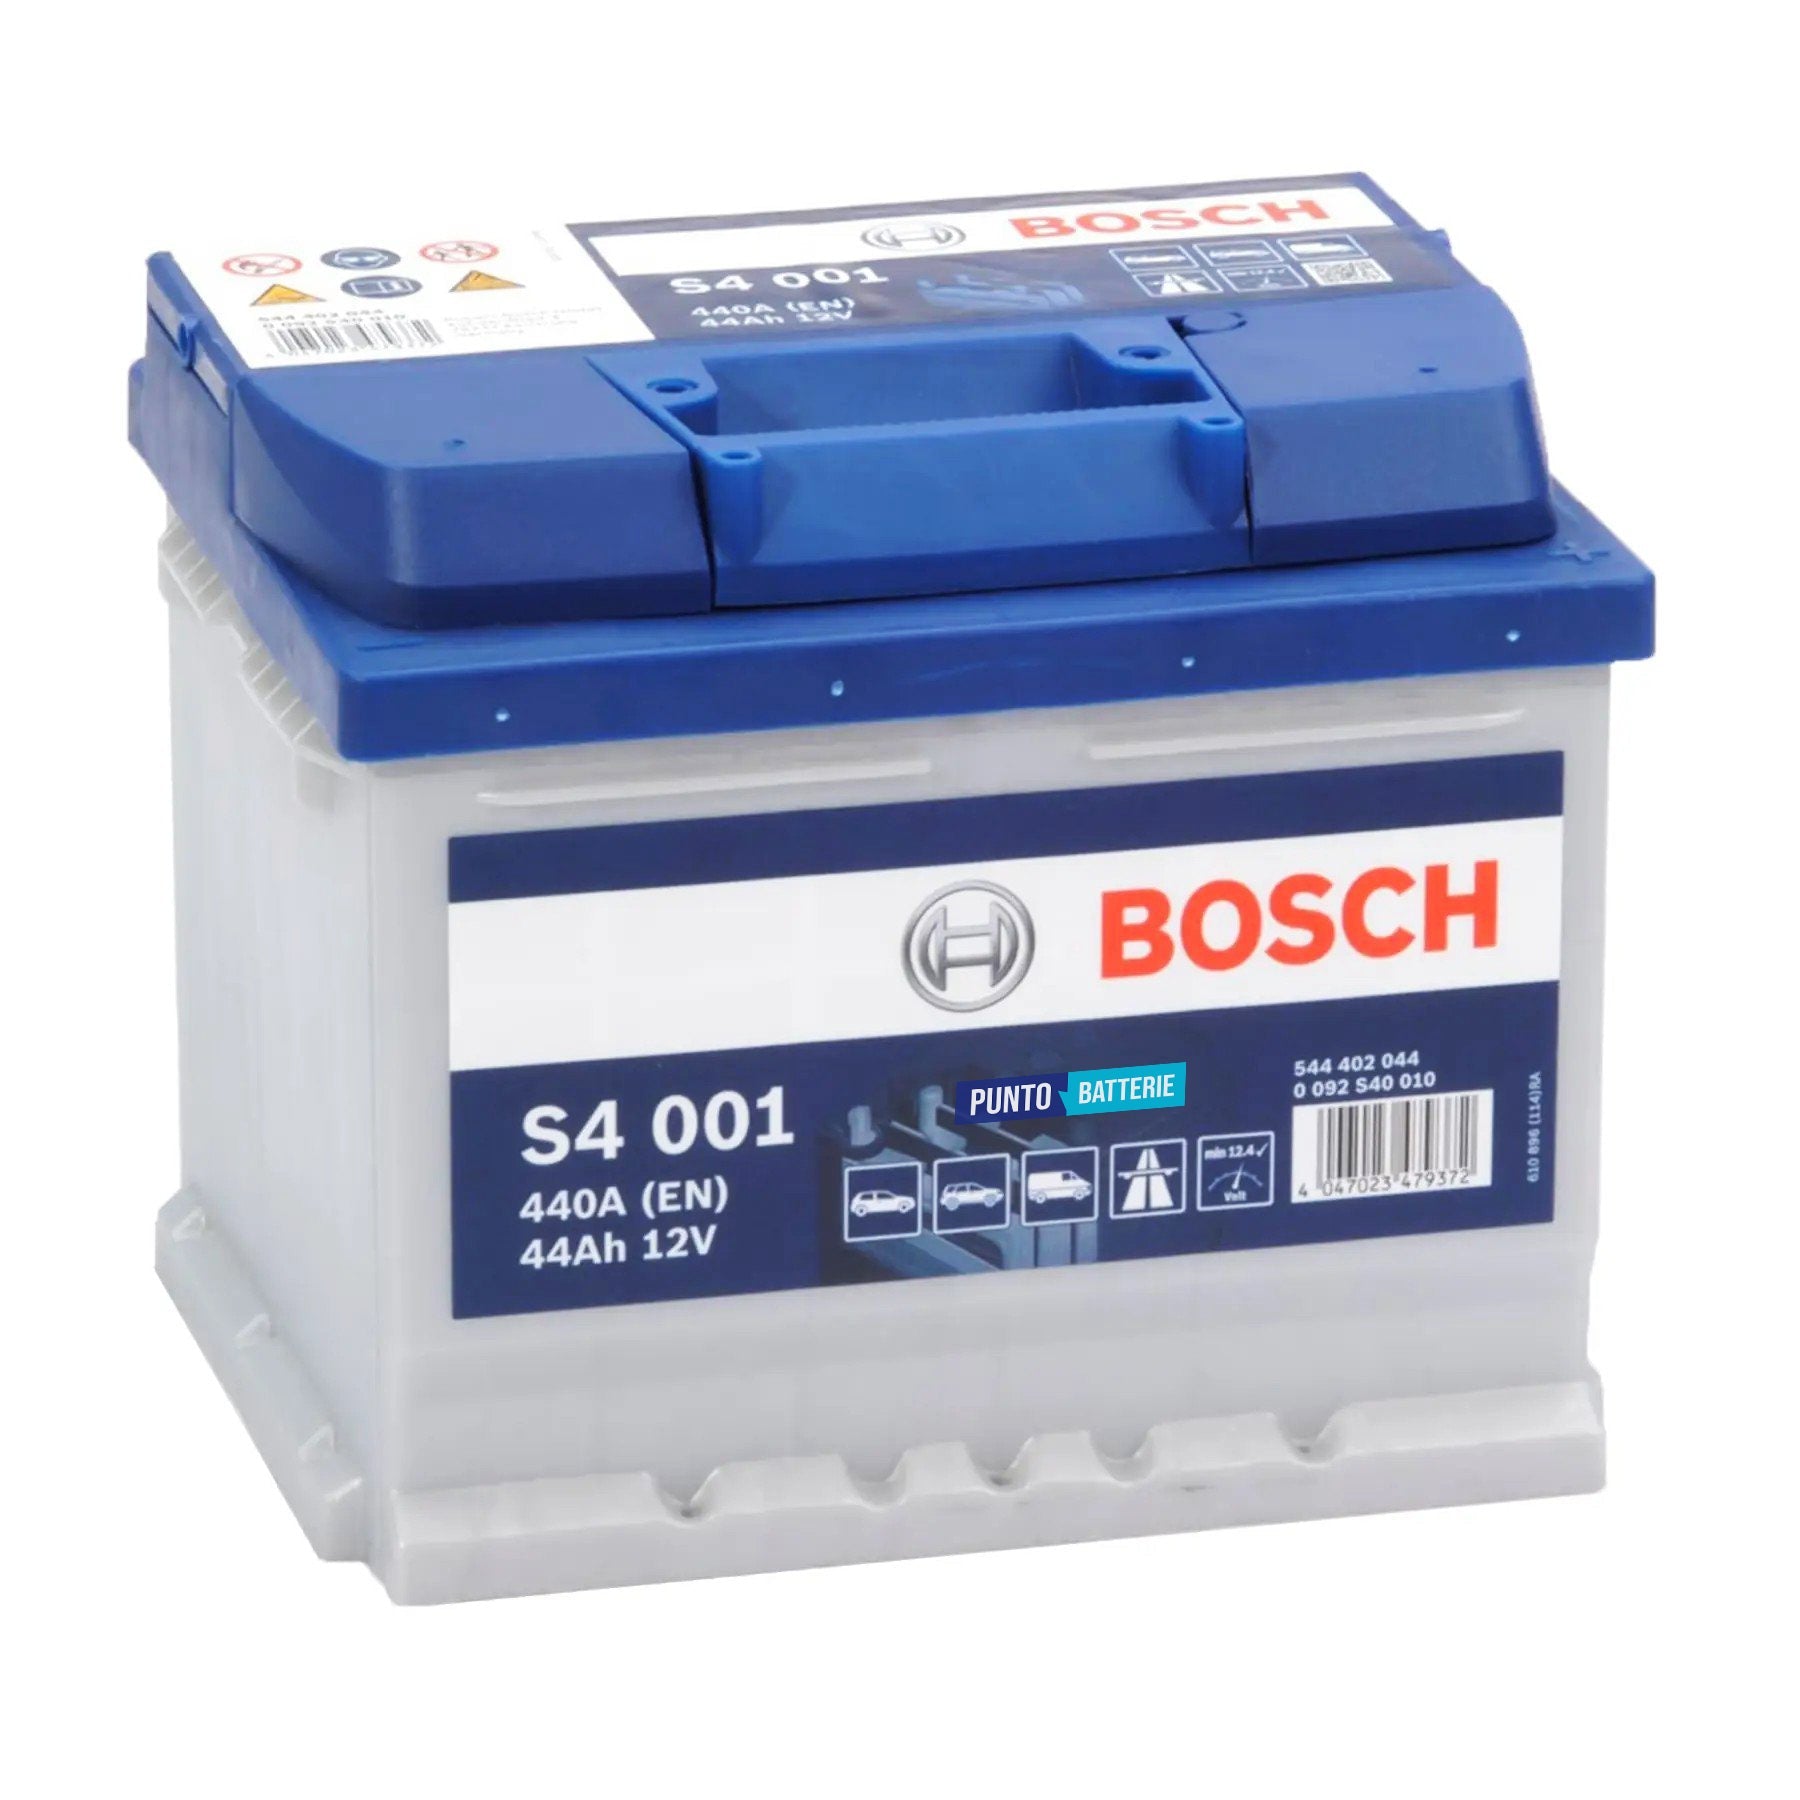 Batteria originale Bosch S4 S4 001, dimensioni 207 x 175 x 175, polo positivo a destra, 12 volt, 44 amperora, 440 ampere. Batteria per auto e veicoli leggeri.